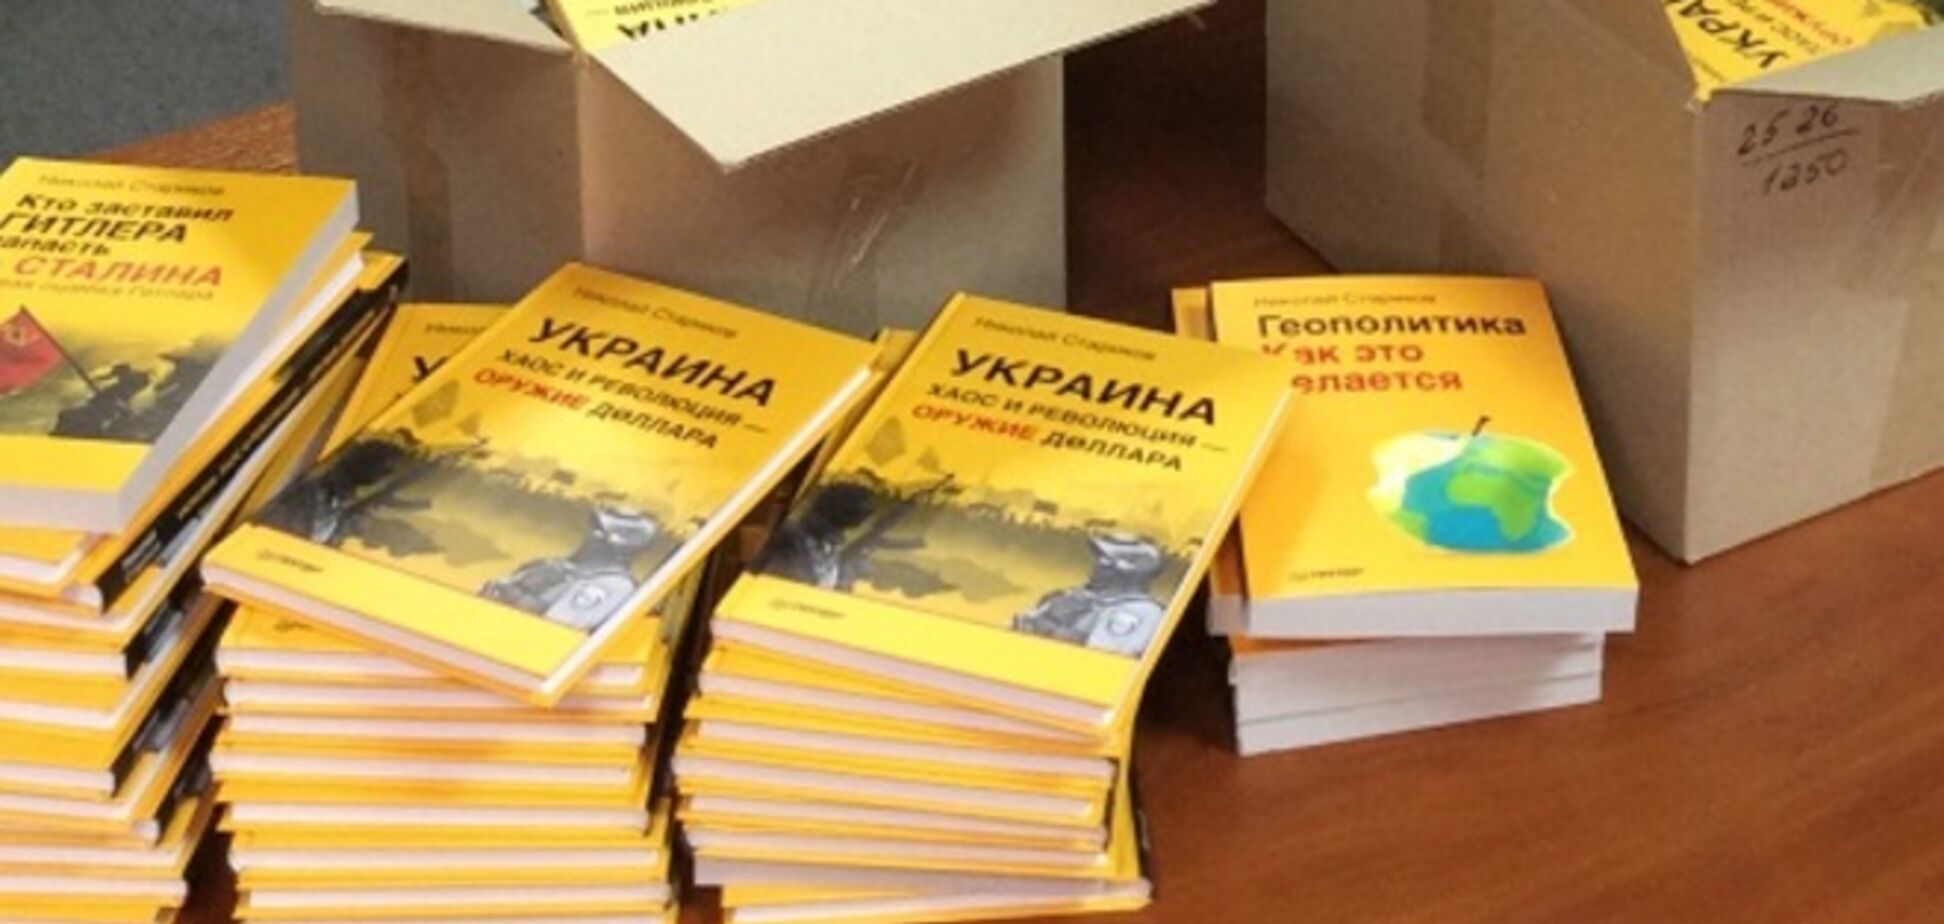 Российская партия отправила на Донбасс книги в качестве гуманитарки